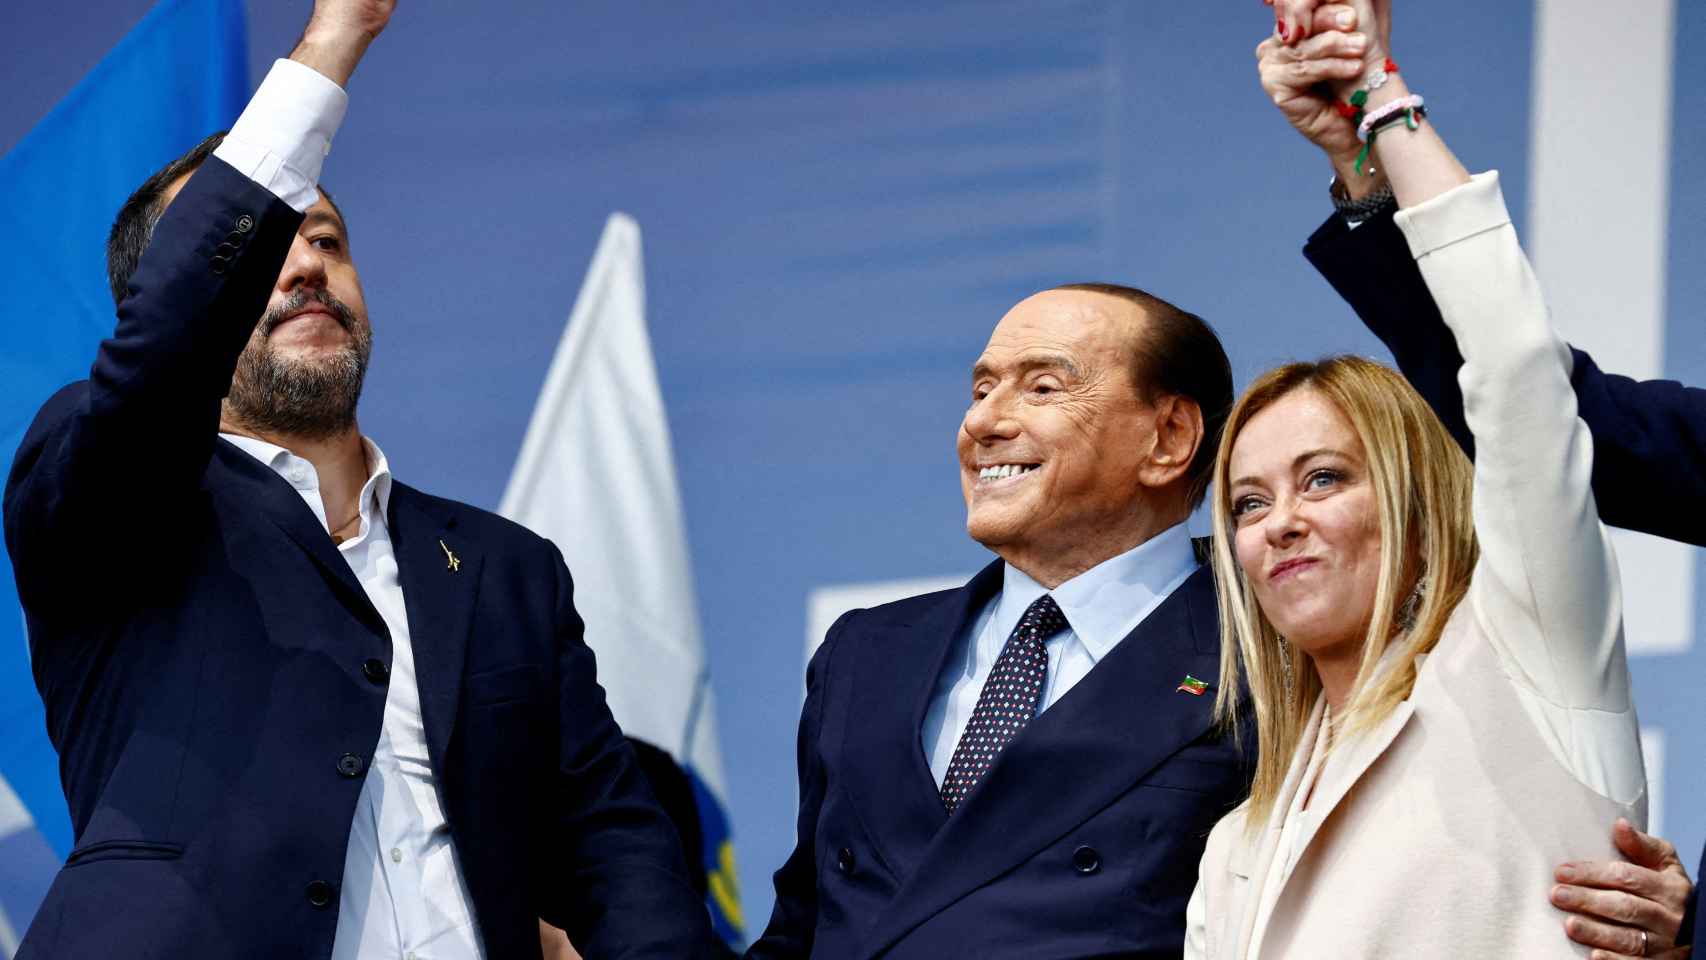 Giorgia Meloni en la campaña electoral junto a Berlusconi y Salvini (izquierda del todo).